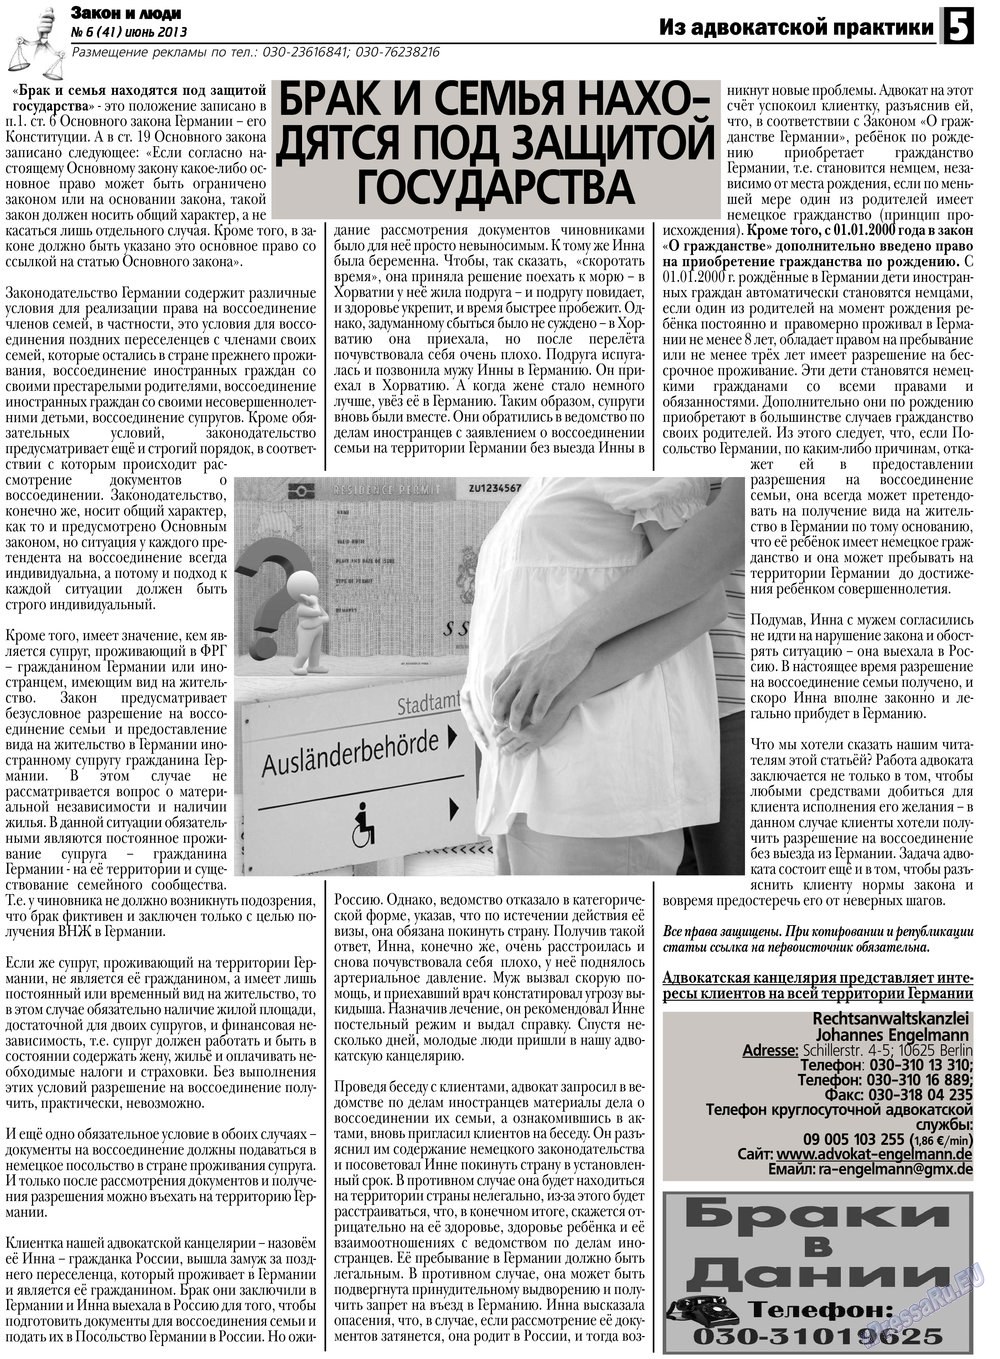 Закон и люди, газета. 2013 №6 стр.5